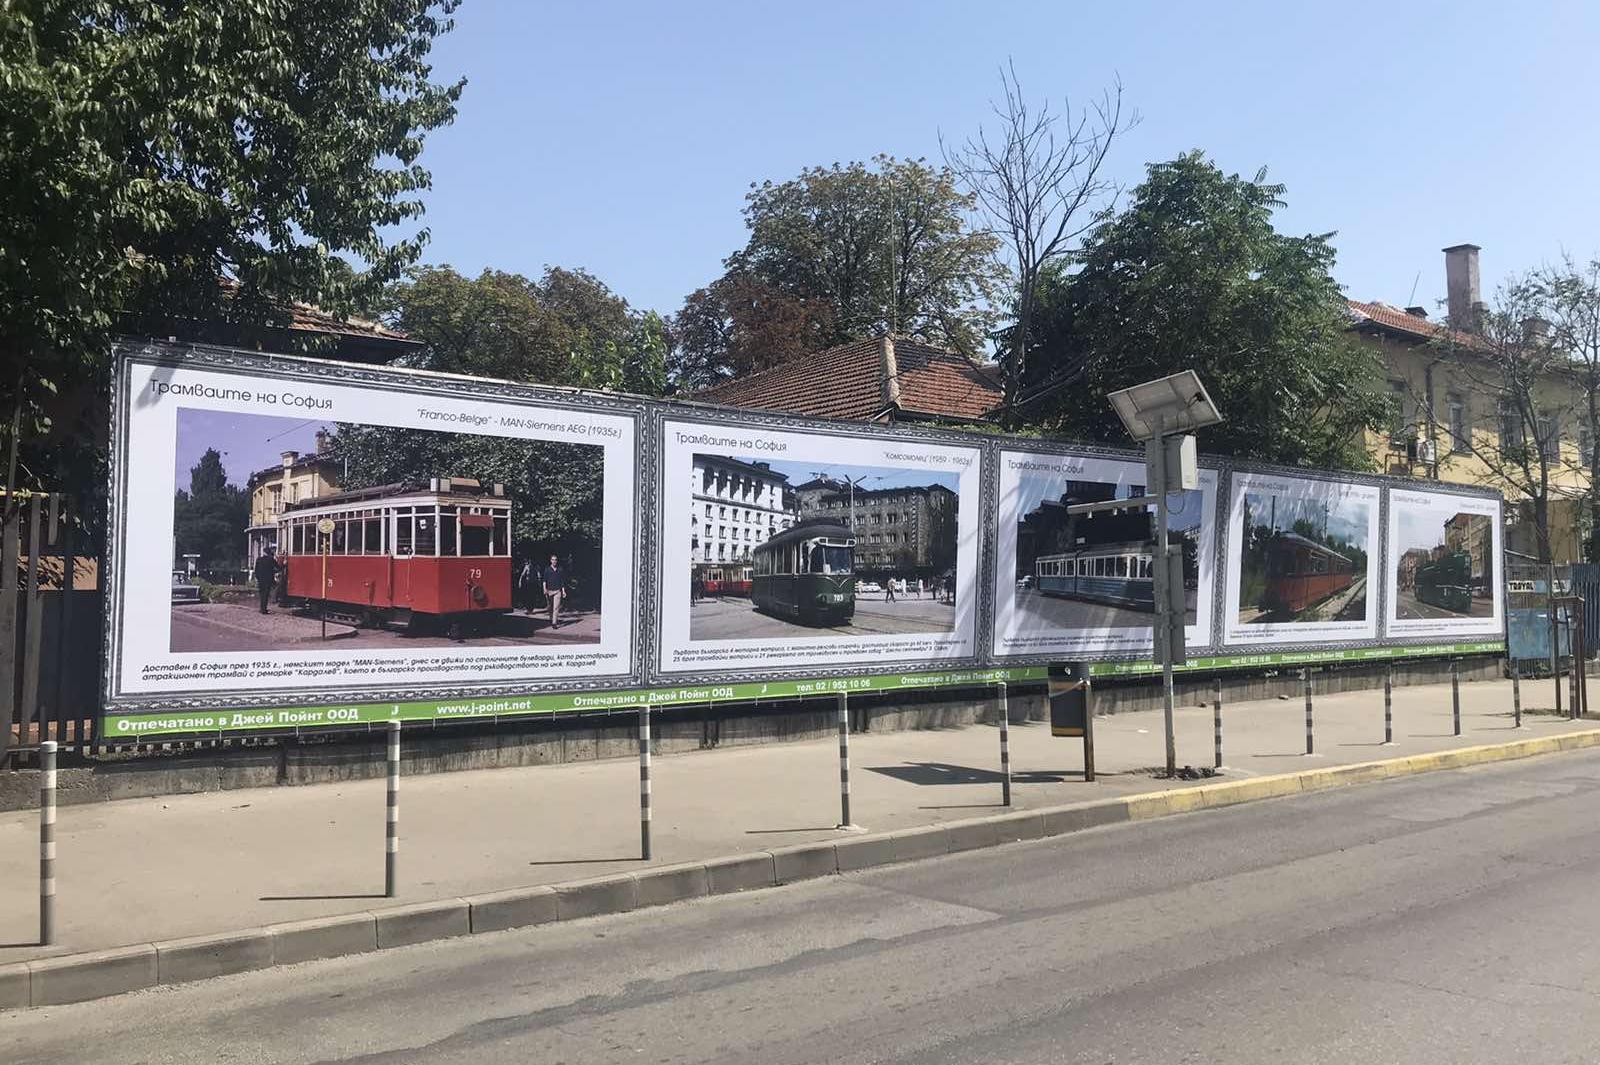 Експозицията"Трамваите на София" разказва историята на релсовия транспорт